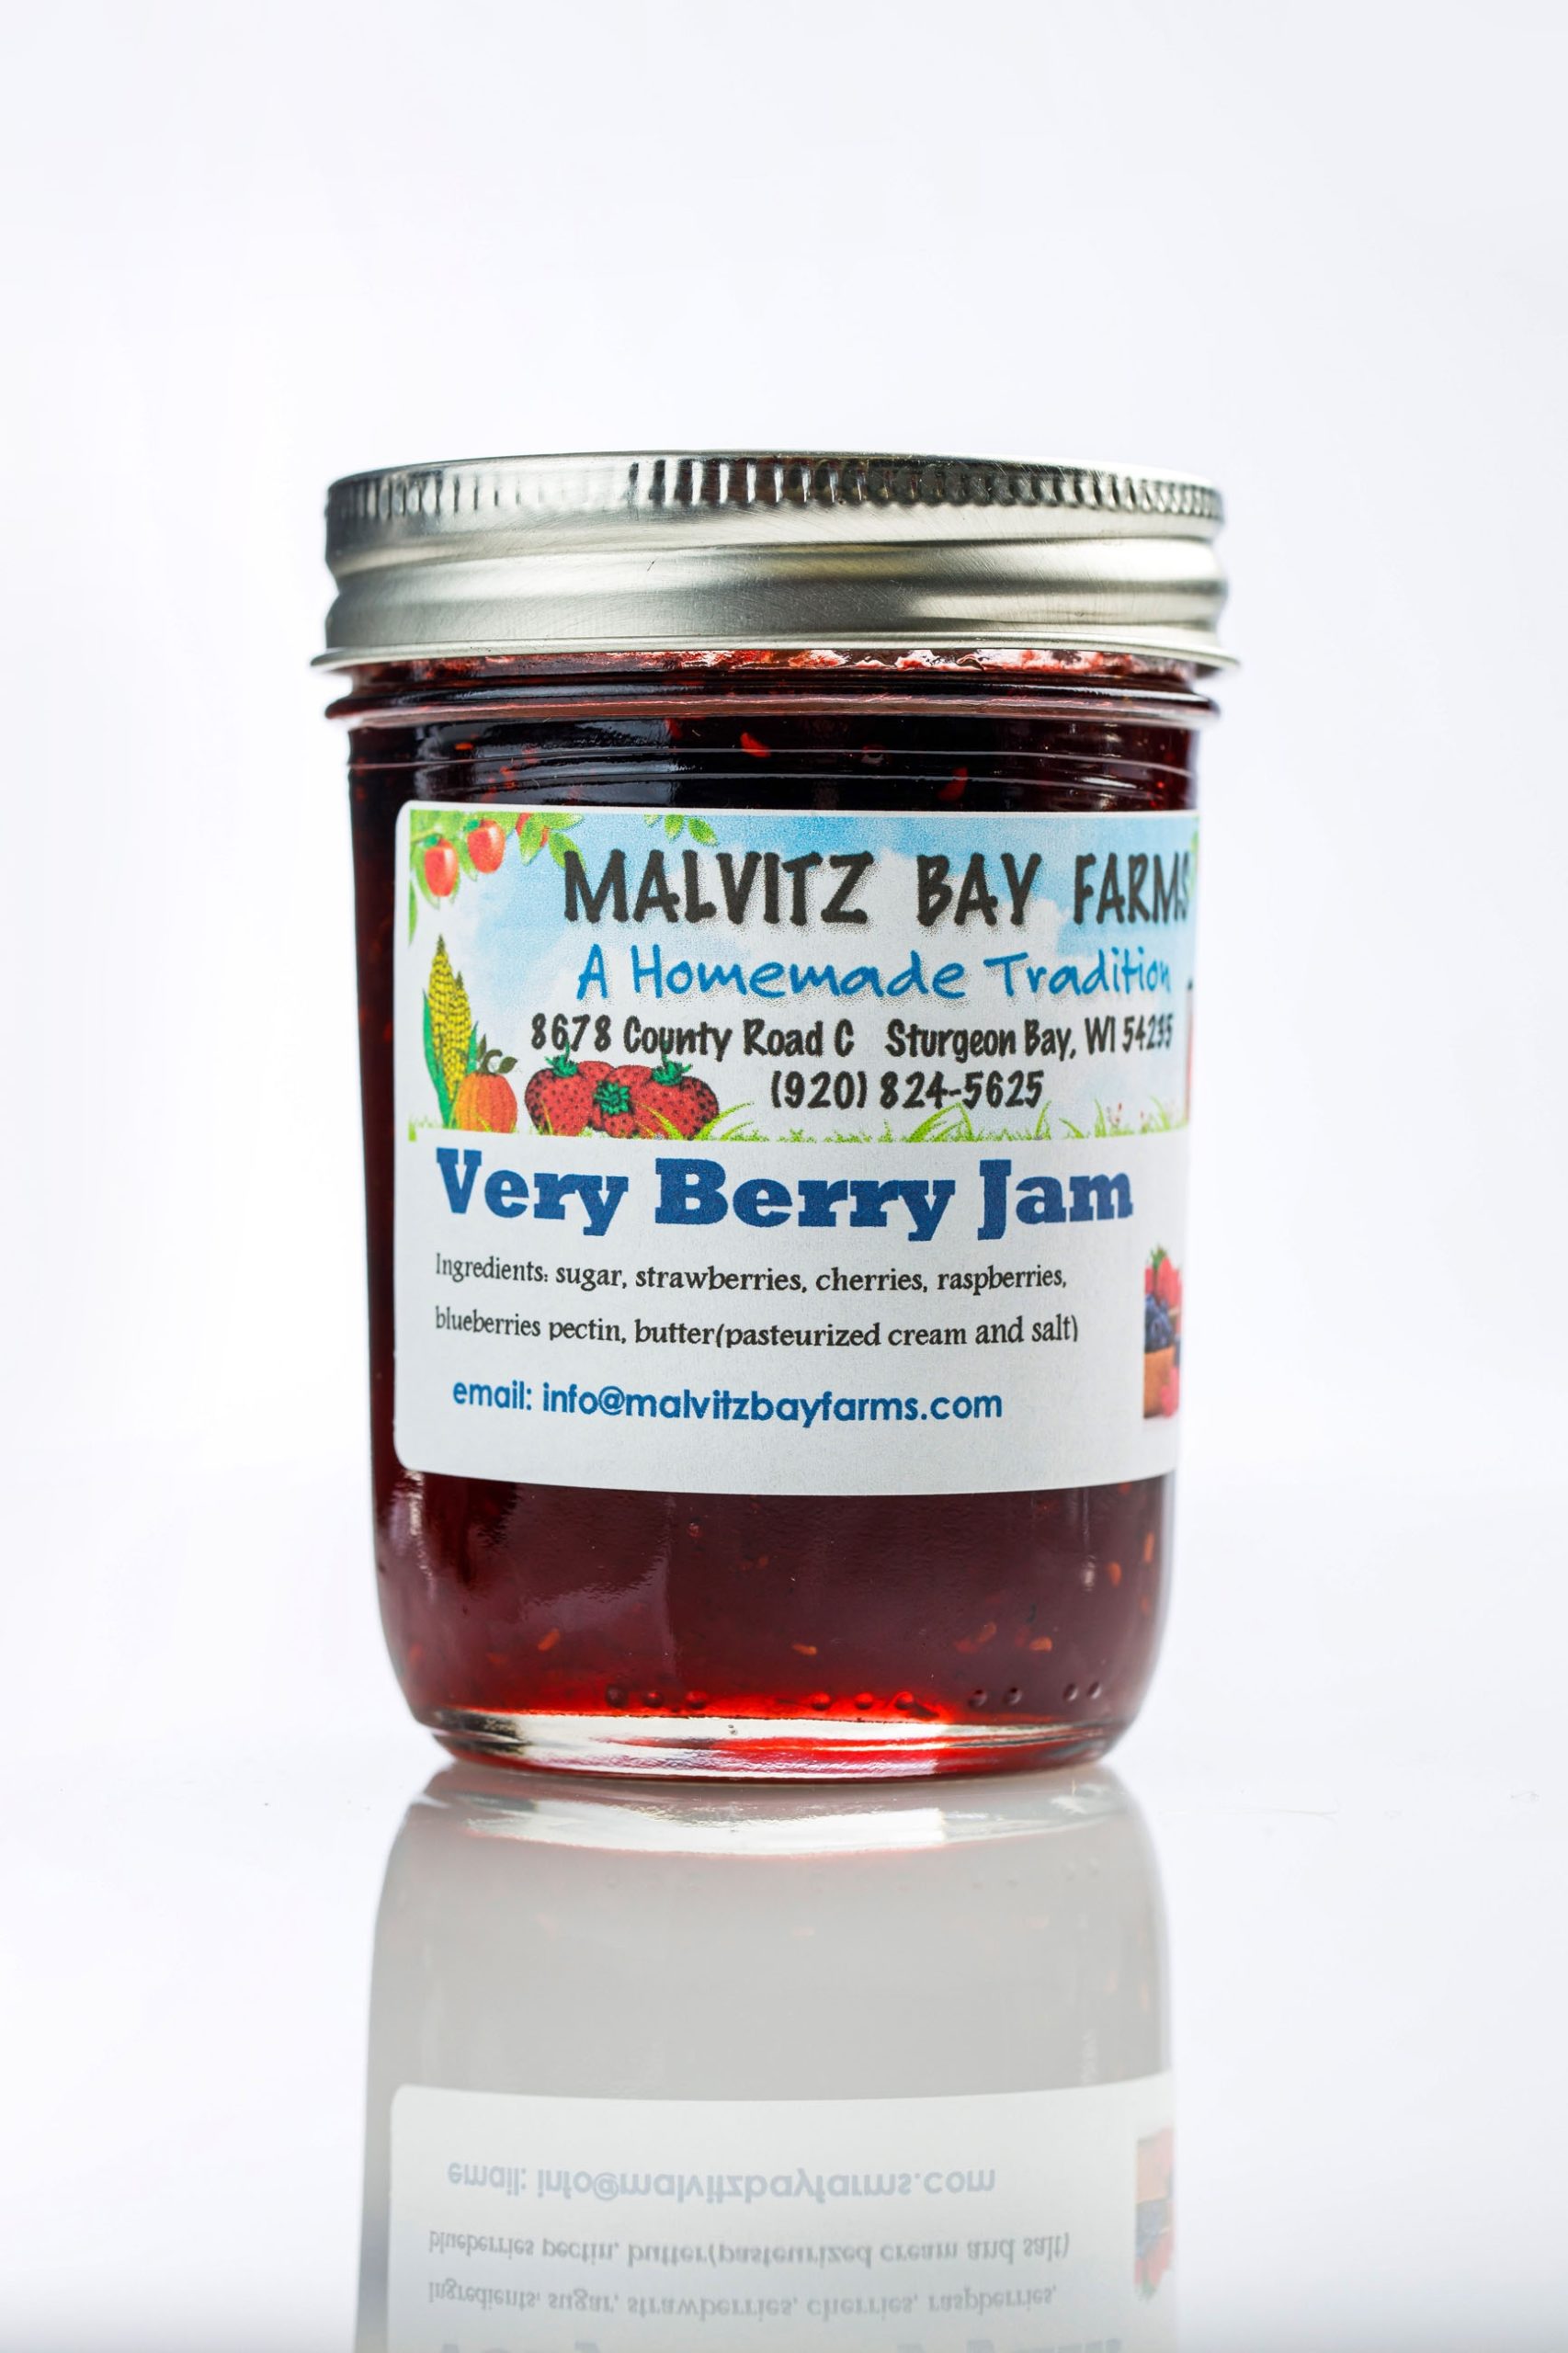 Very Berry Jam - Malvitz-0